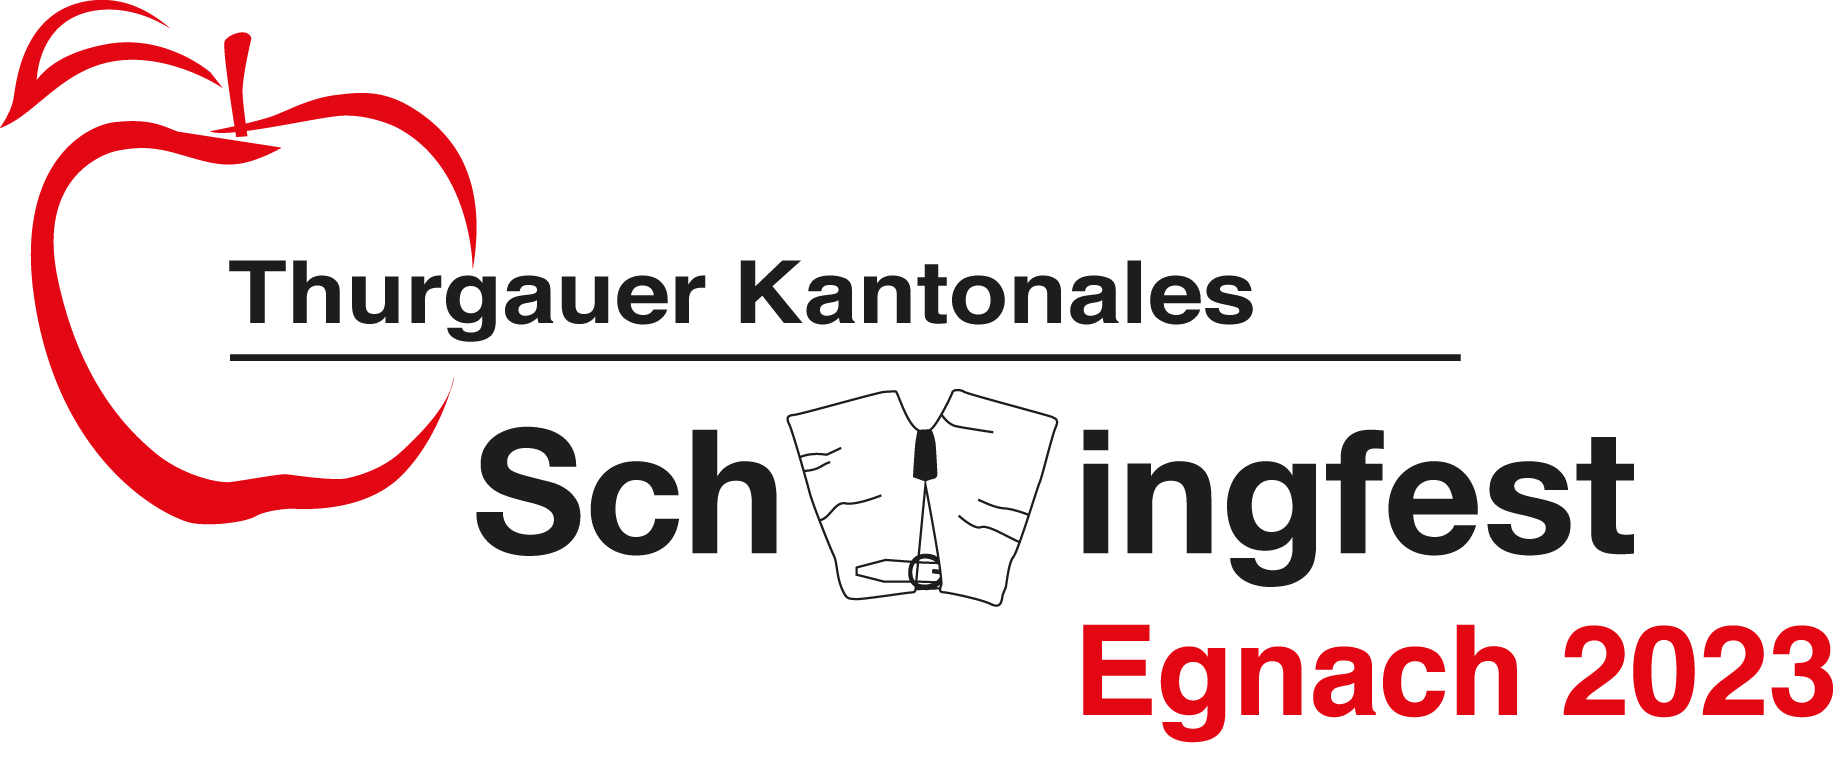 logo_schwingfest_farbig